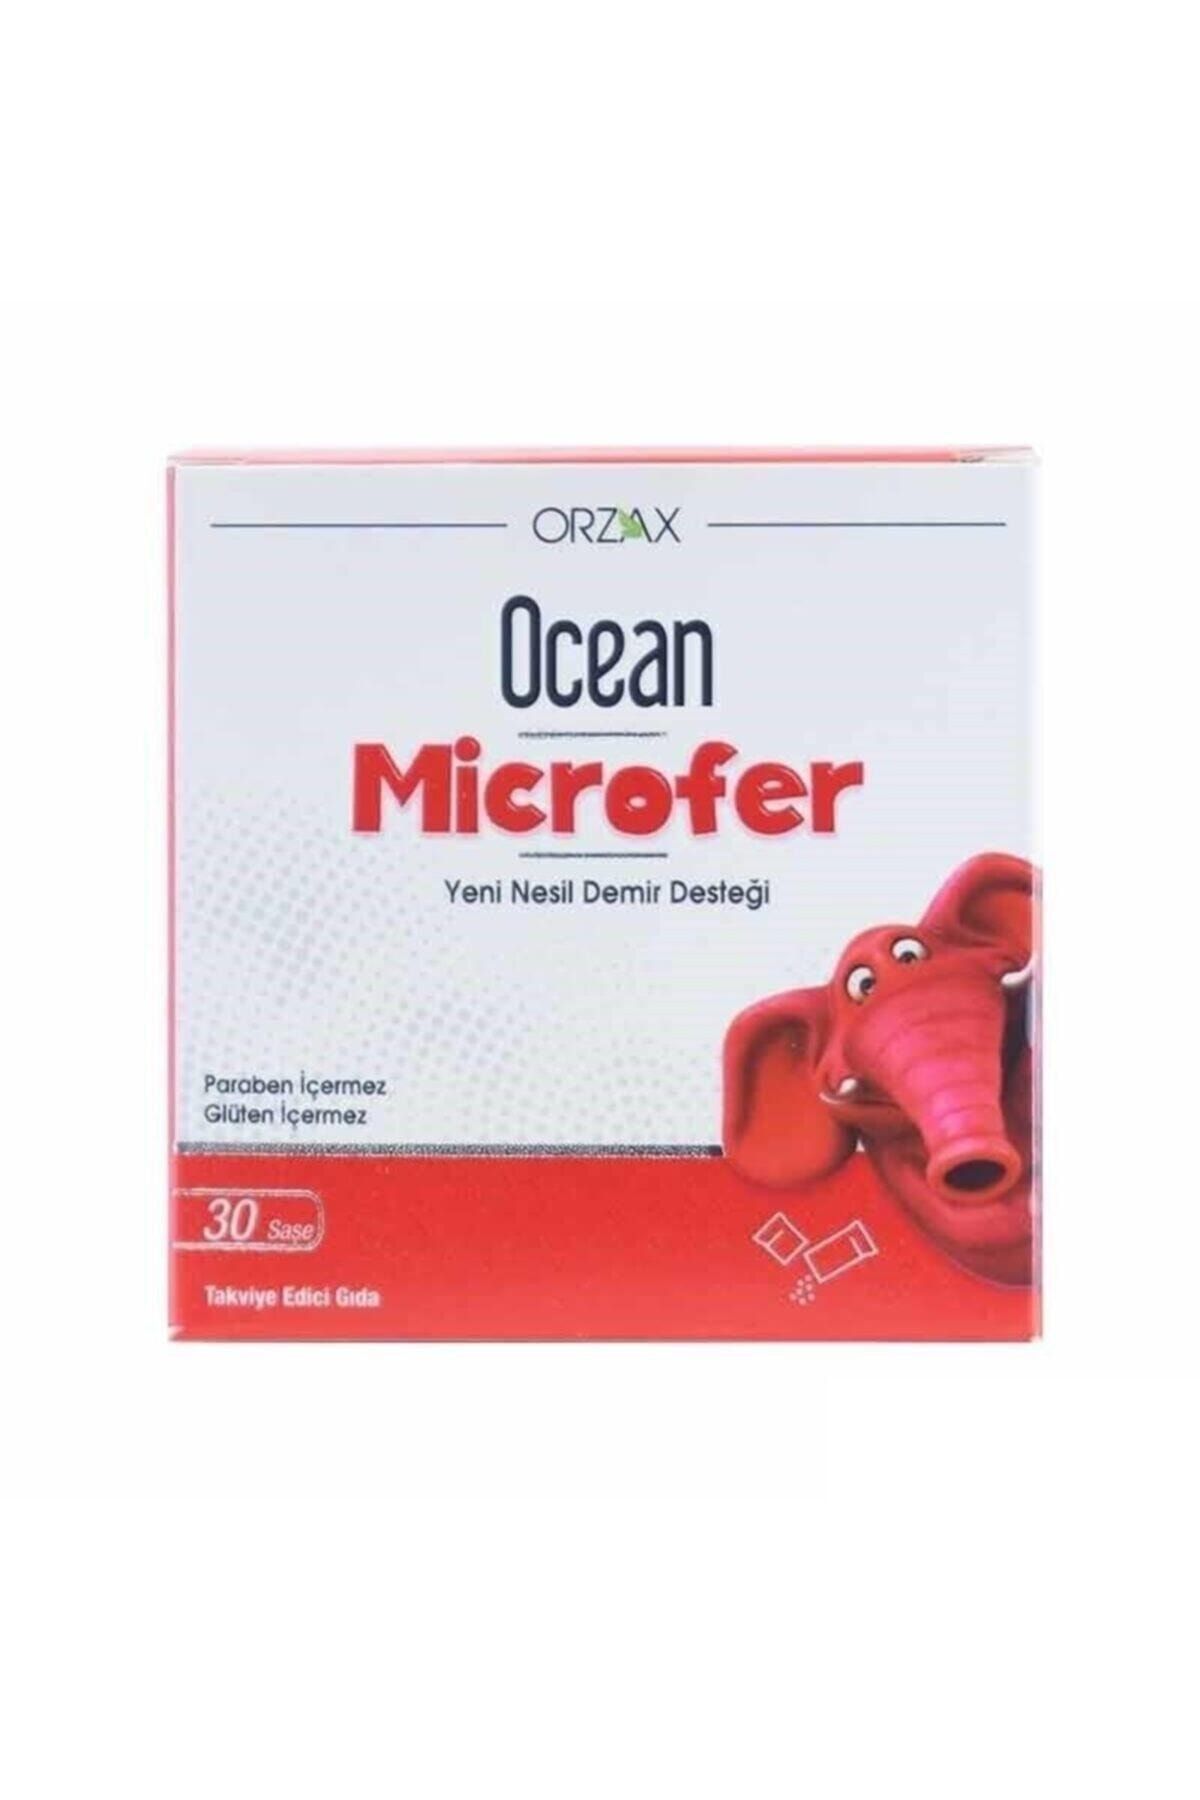 Ocean Ocean Microfer 30 Saşe